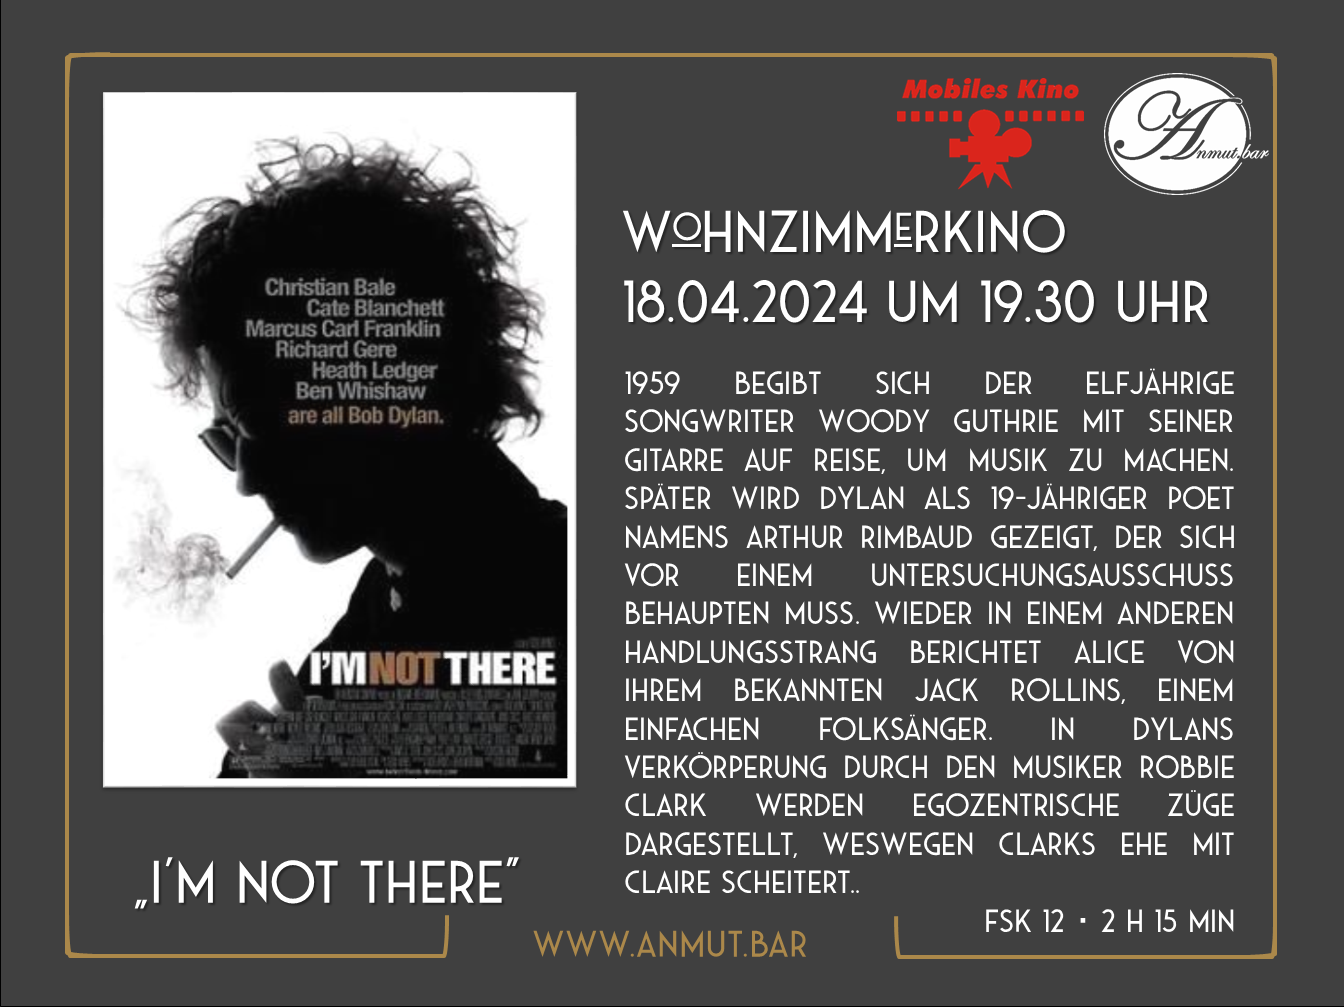 Wohnzimmerkino: „I’m not there“